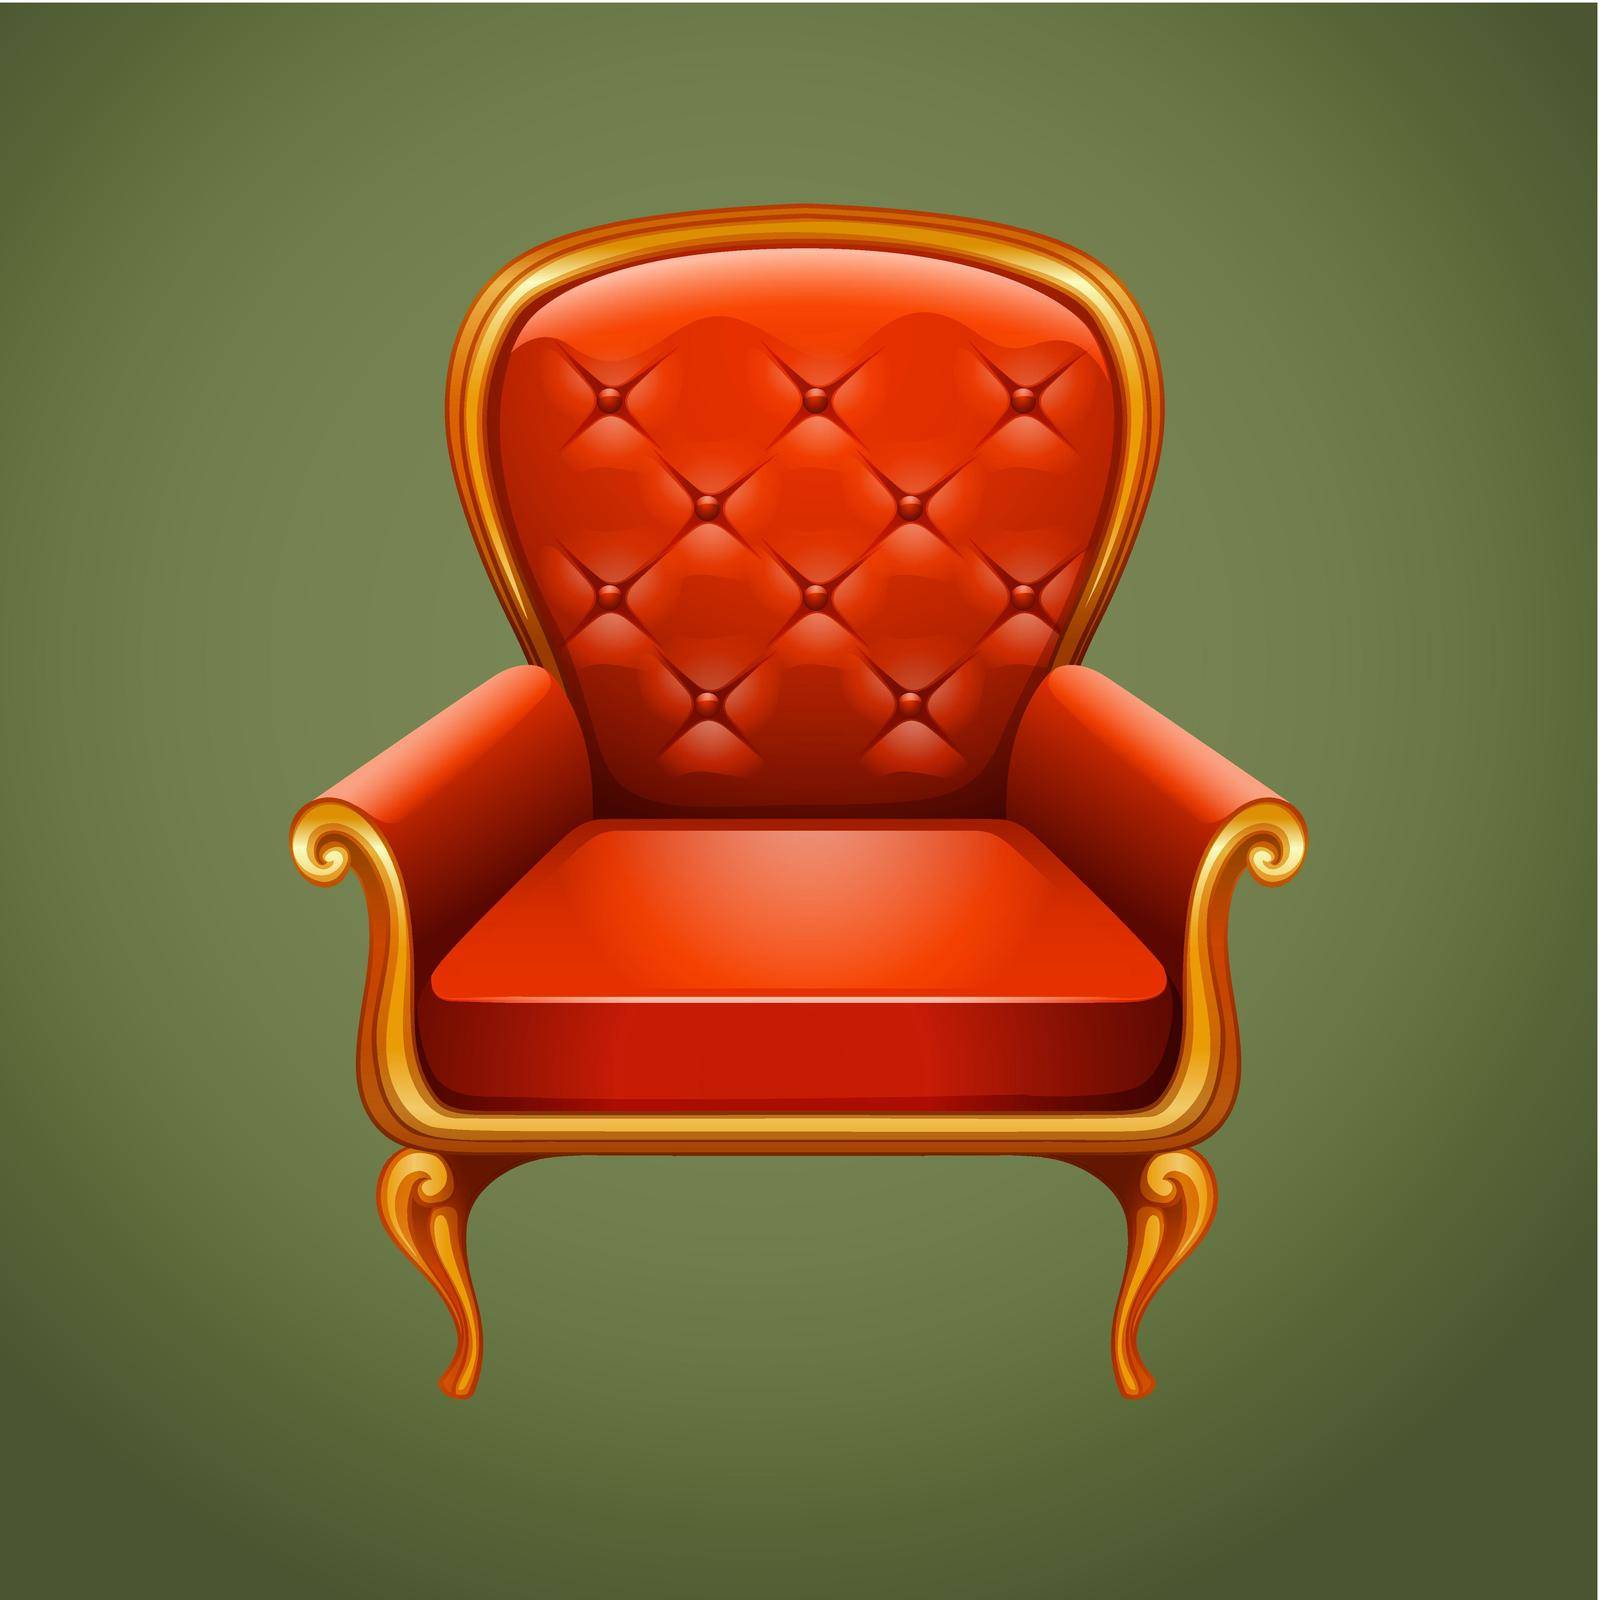 Luxury armchair on gray illustration